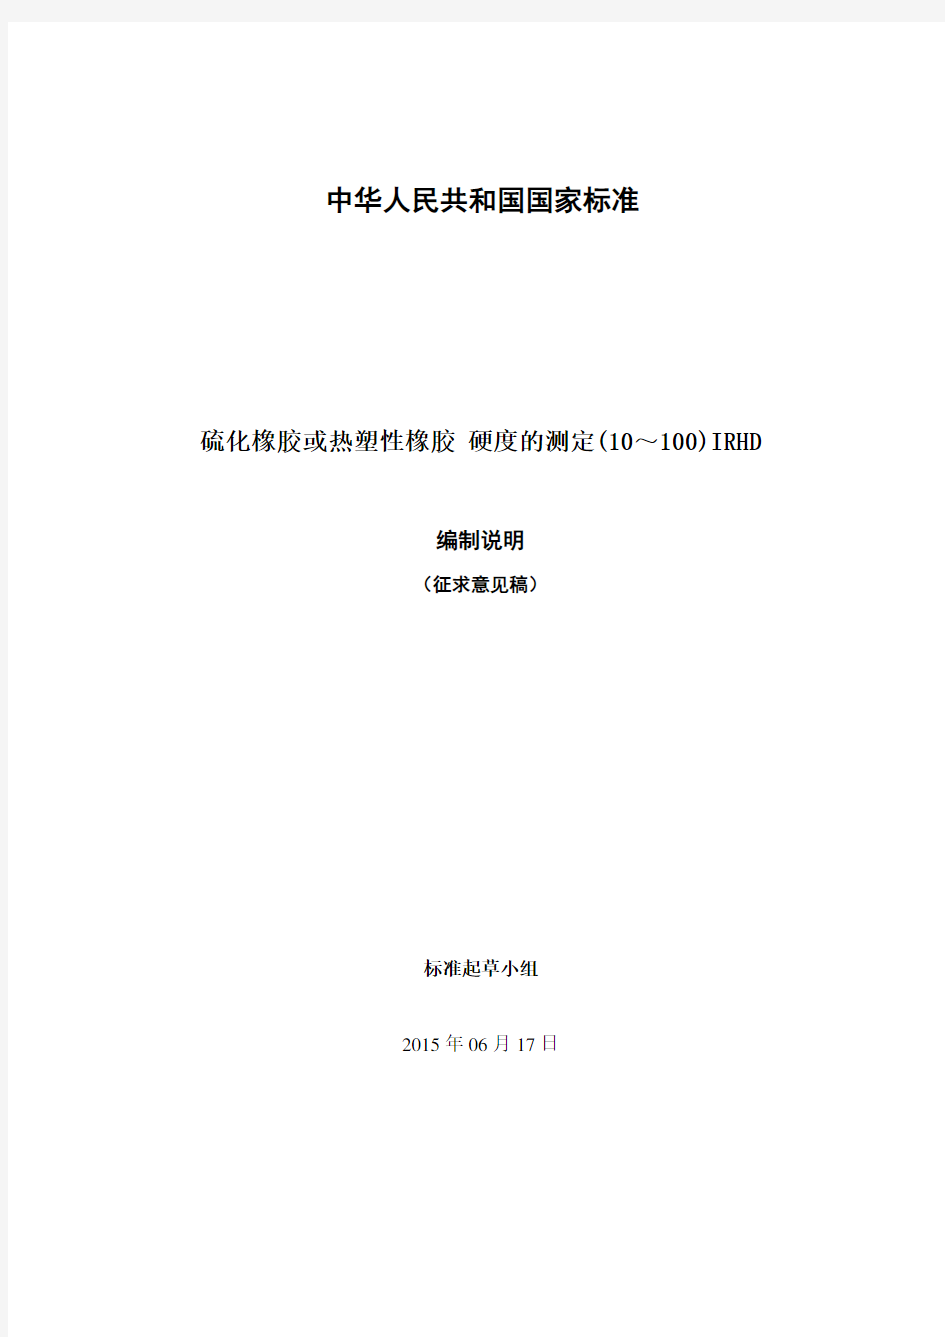 中华人民共和国国家标准-全国橡胶与橡胶制品标准化技术委员会